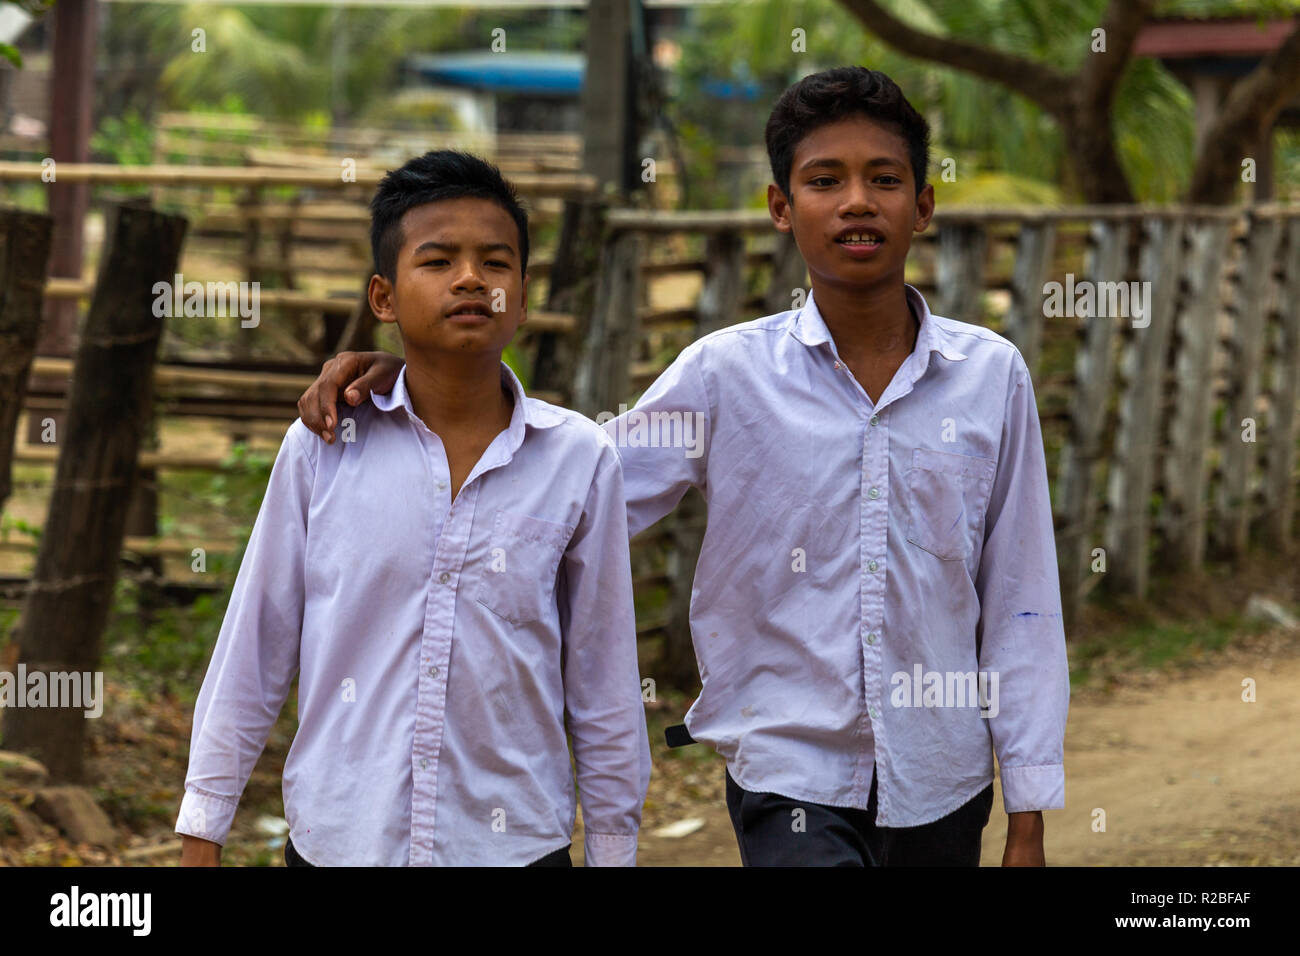 Don Det, Laos - April 24, 2018: Schule Jungen gemeinsam zu Fuß durch ein abgelegenes Dorf im südlichen Laos Stockfoto